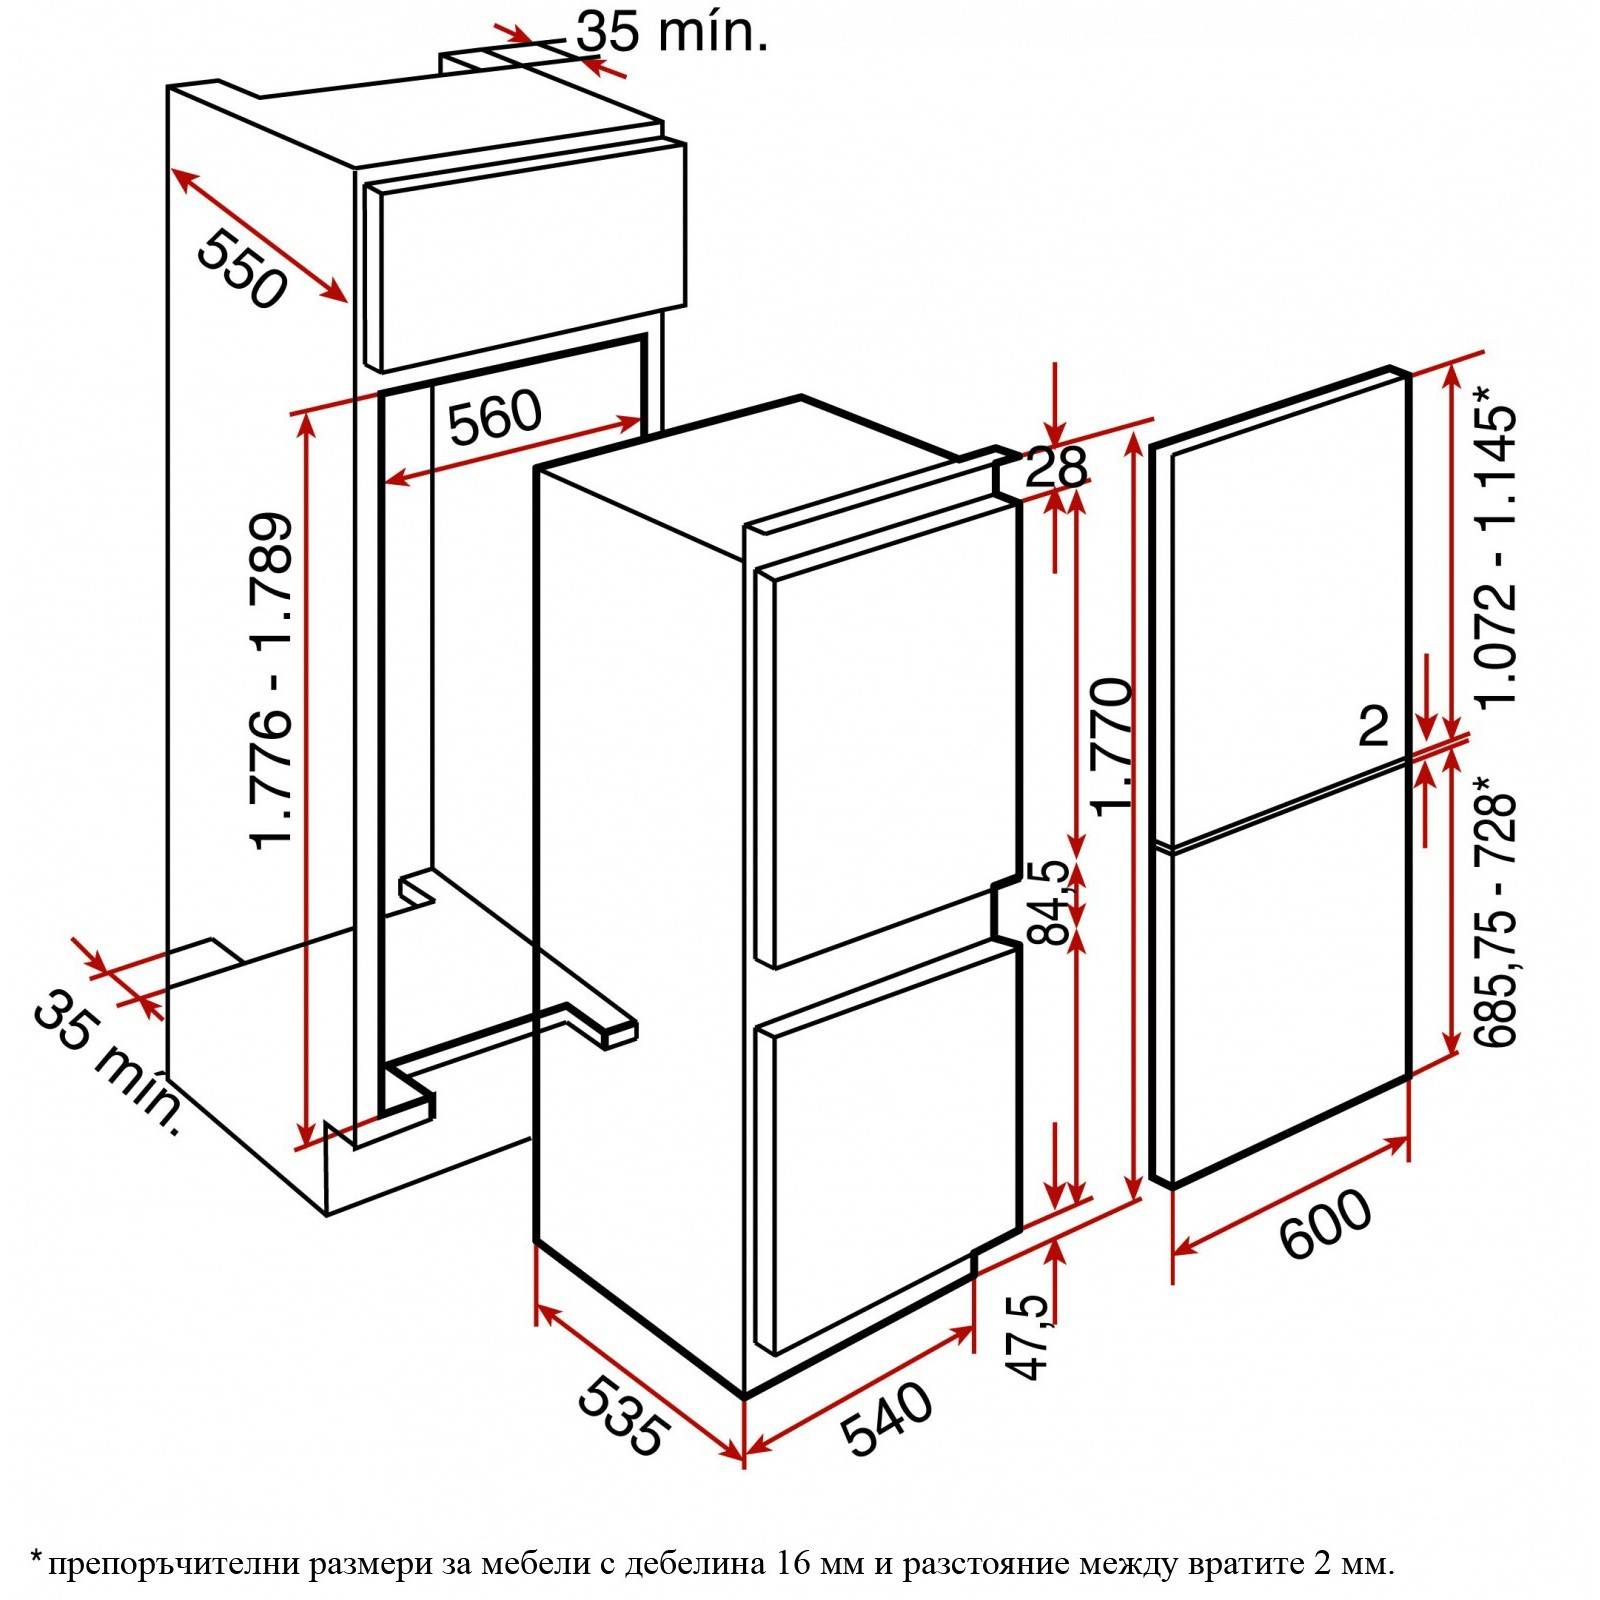 Габариты холодильника: стандартные, максимальные и минимальные размеры, подбор холодильника и размеры ниш под технику